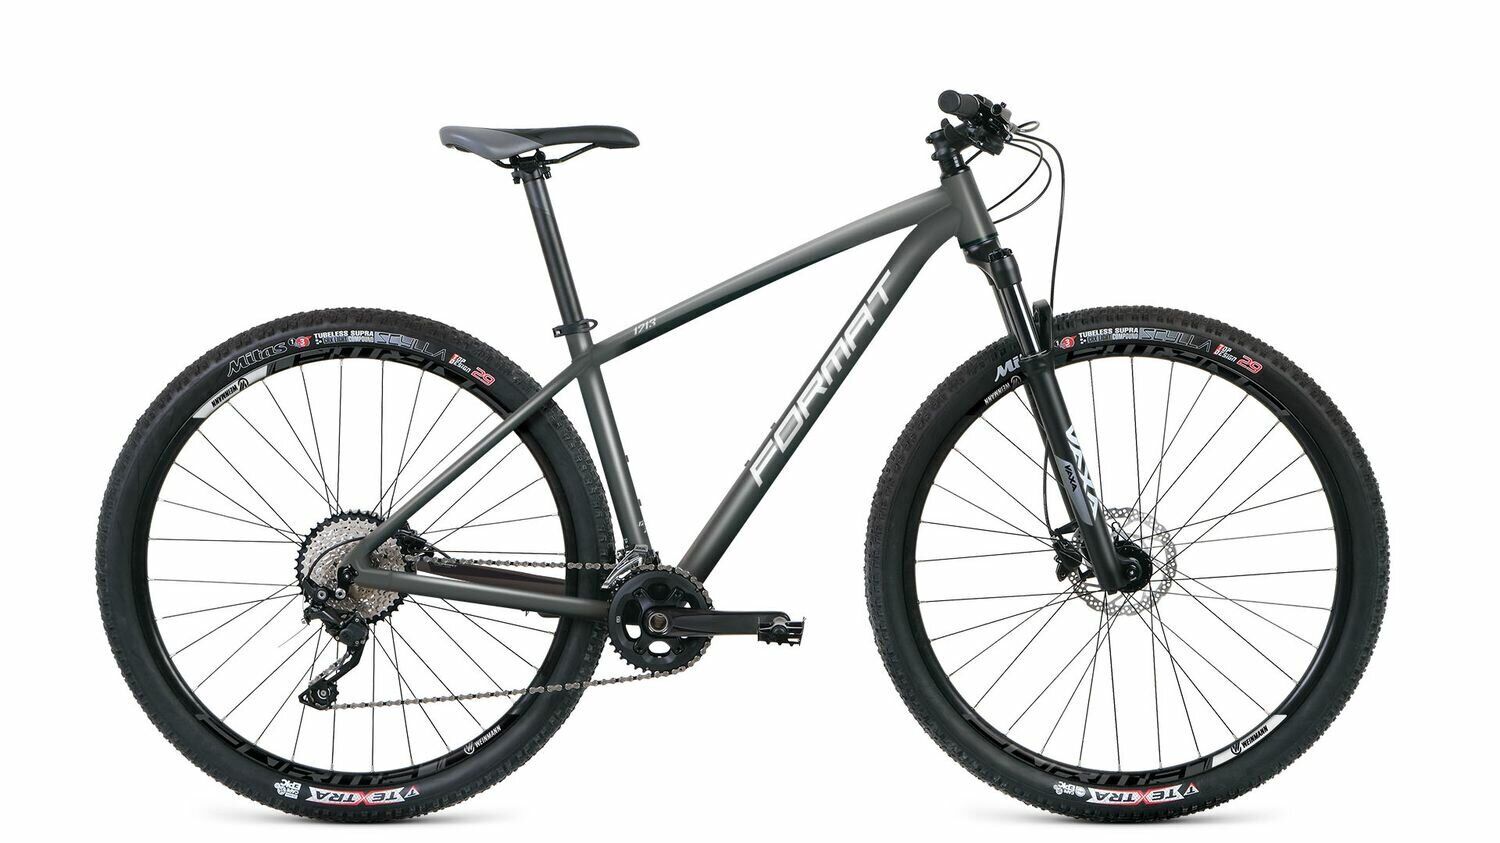 Фото выбрать и купить велосипед format 1213 27,5 (2021) тёмно-серый, размер l велосипеды со склада в СПб - большой выбор для взрослого и для детей, велосипед format 1213 27,5 (2021) тёмно-серый, размер l велосипеды в наличии - интернет-магазин Мастерская Тимура